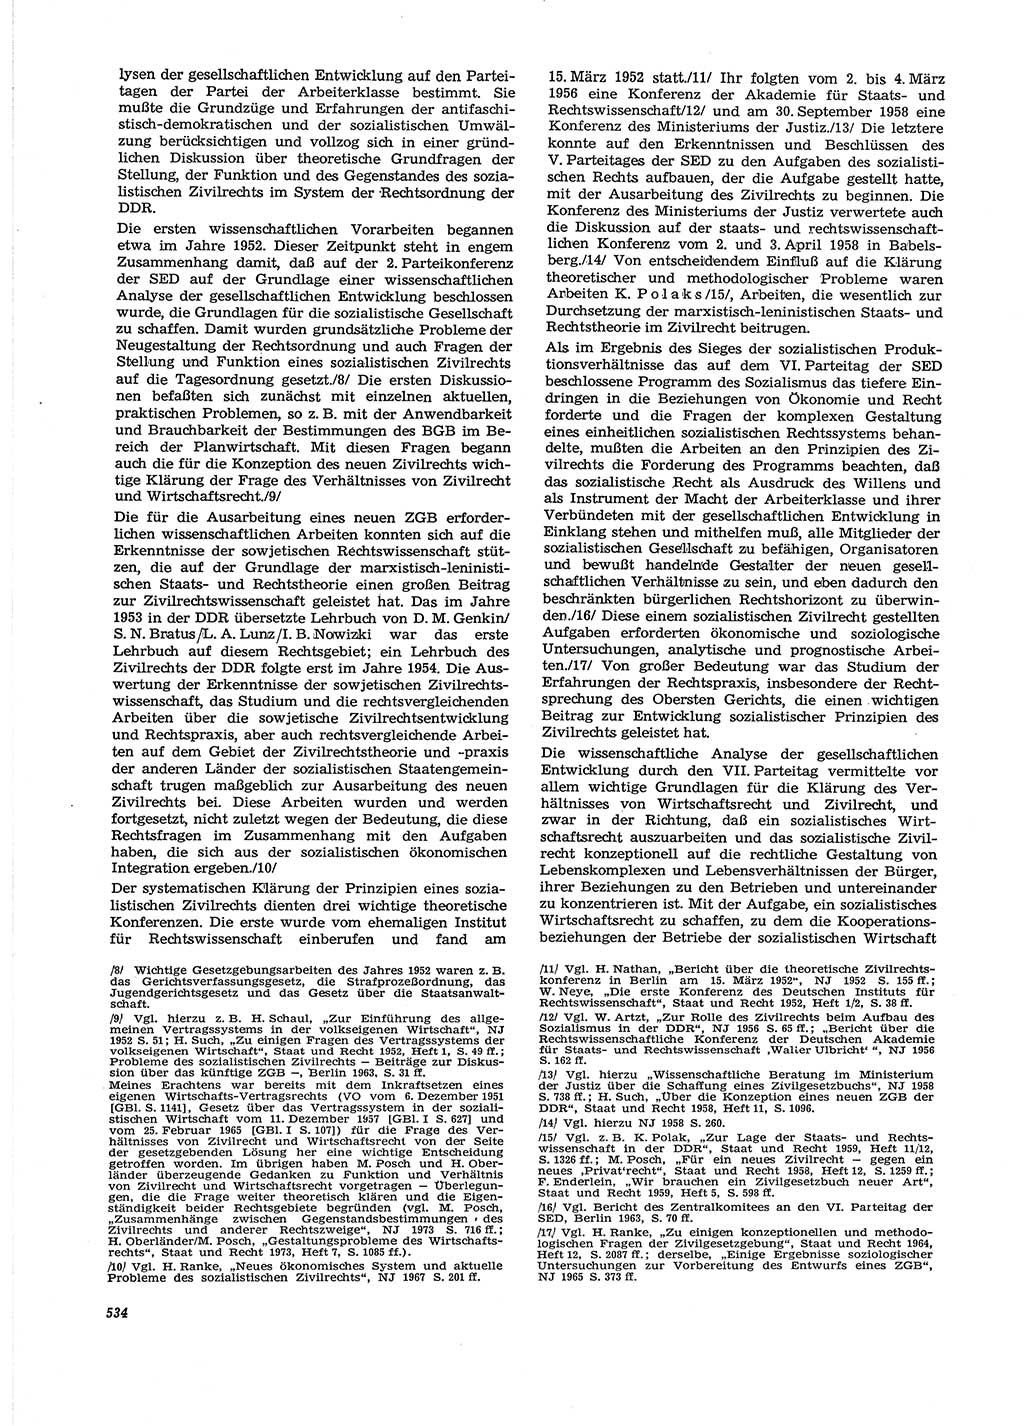 Neue Justiz (NJ), Zeitschrift für Recht und Rechtswissenschaft [Deutsche Demokratische Republik (DDR)], 29. Jahrgang 1975, Seite 534 (NJ DDR 1975, S. 534)